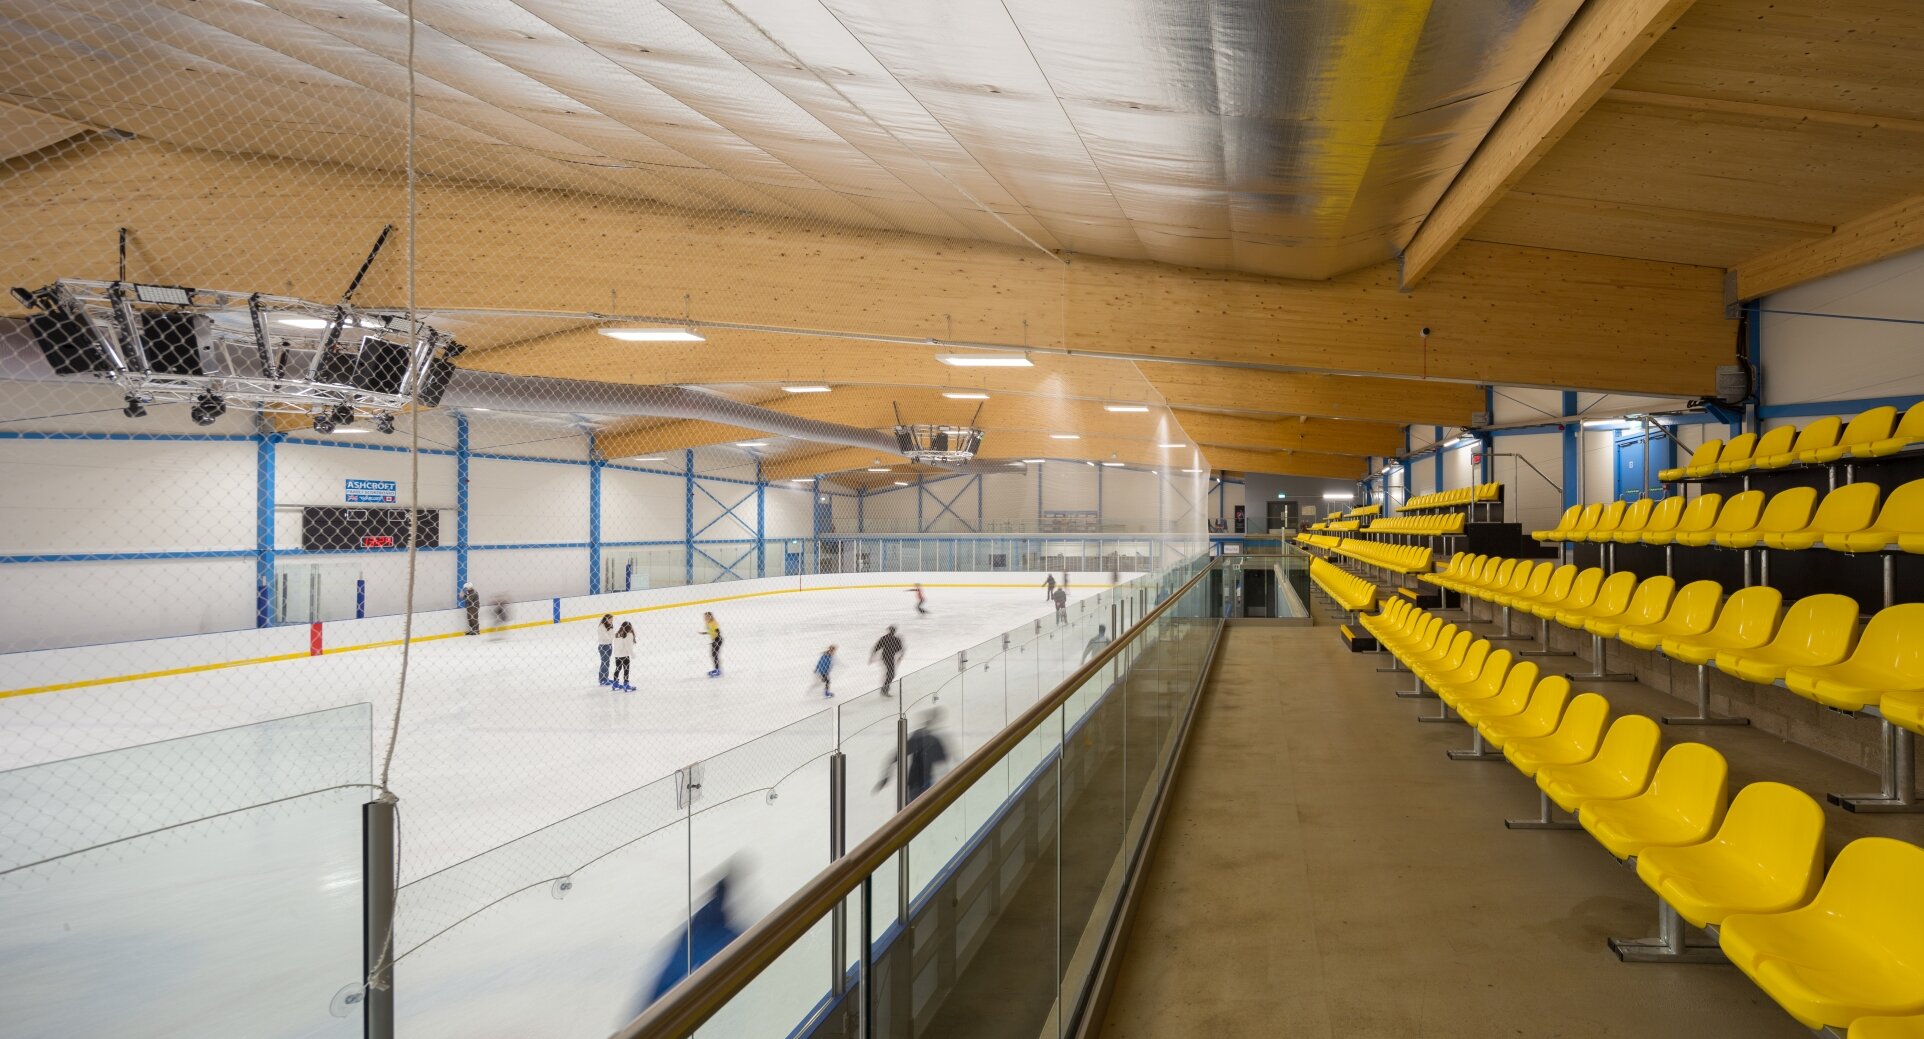 MSAP_QOCA_Cambridge Ice Arena_IMG_0528-Pano.jpg